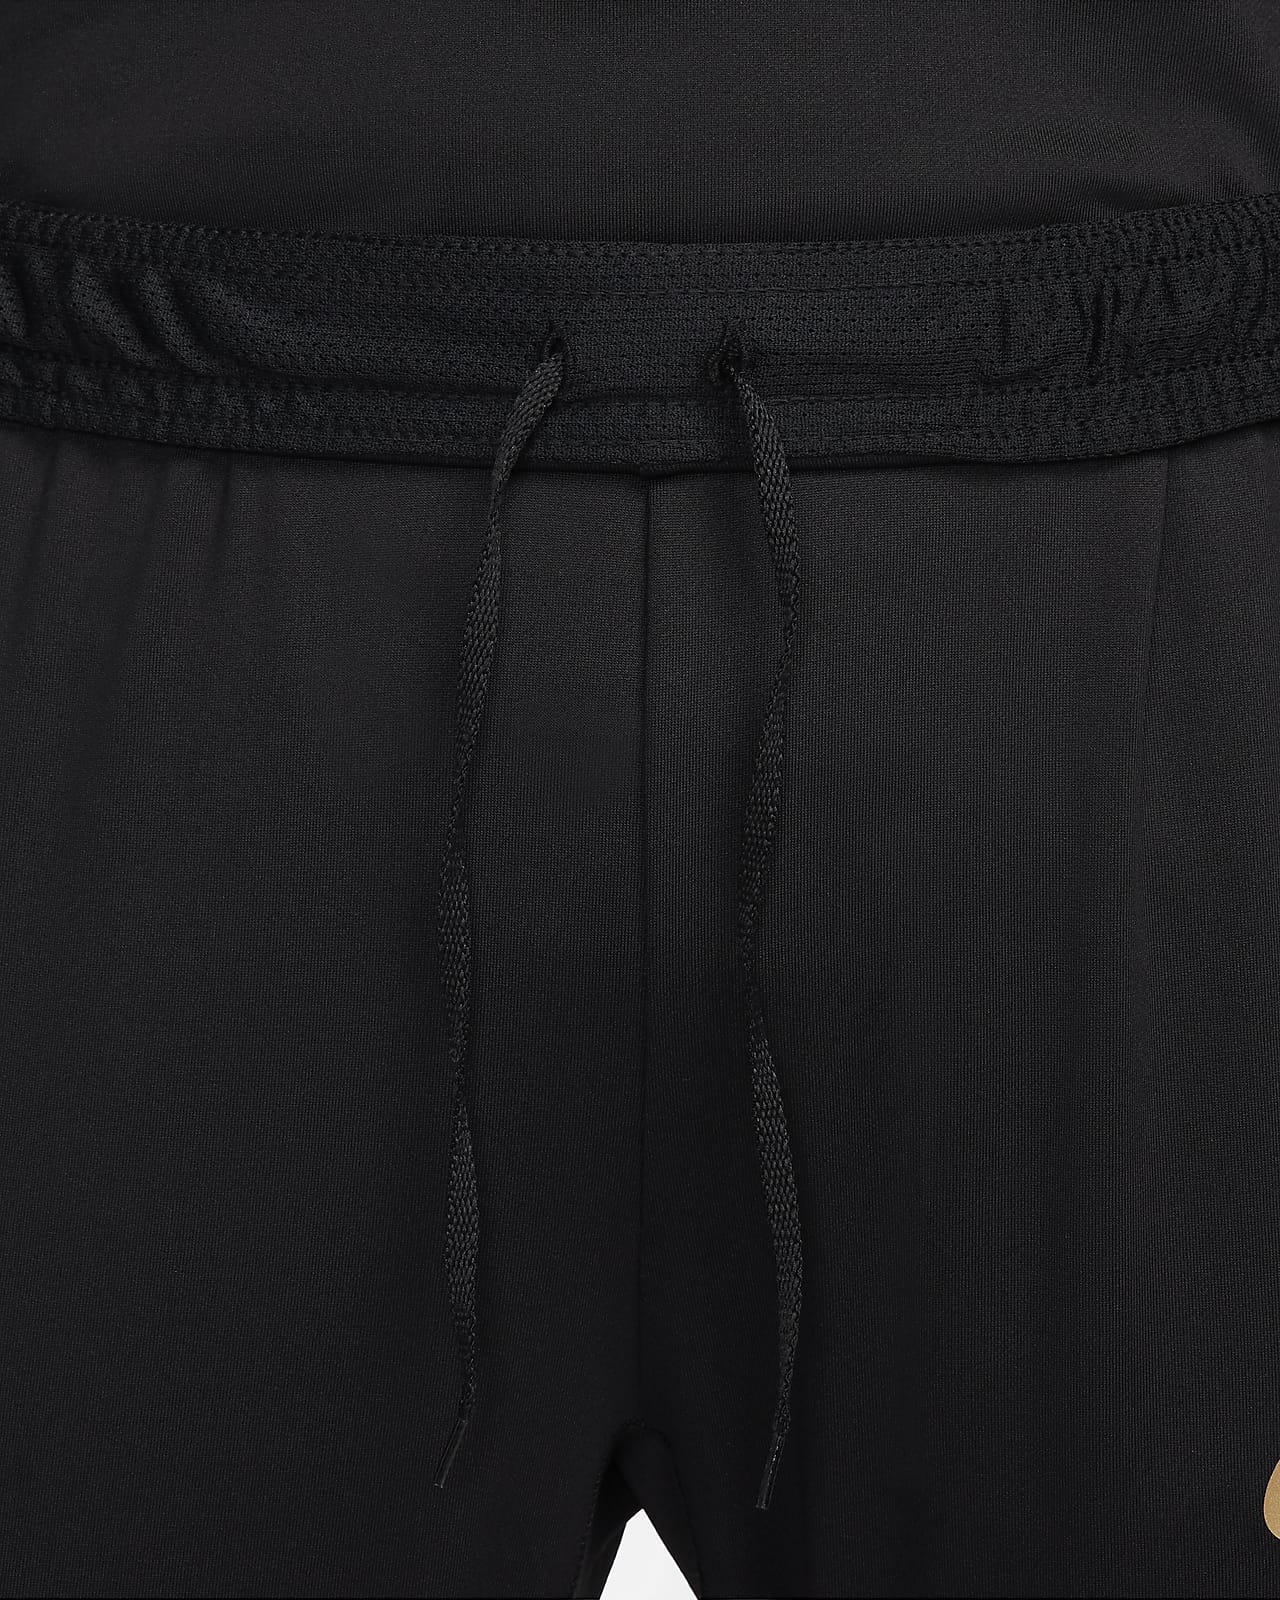 Nike Strike Women's Dri-FIT Soccer Pants.